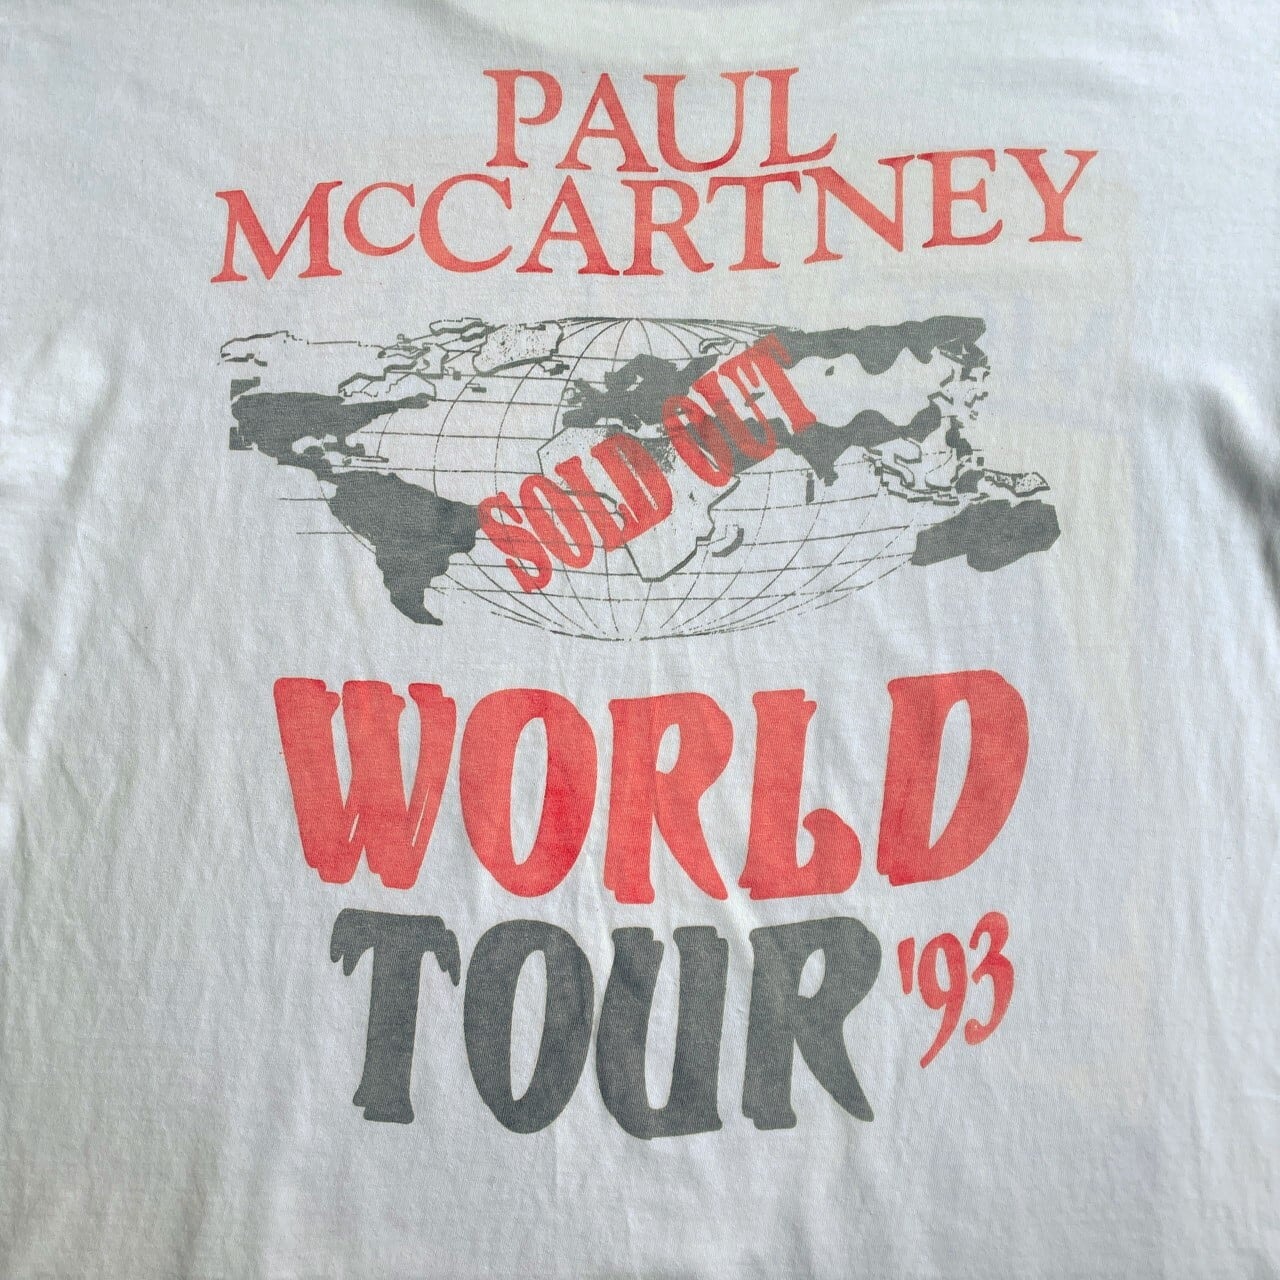 Vintage Rock Item ヴィンテージロックアイテム Tシャツ サイズ：L Paul McCartney ポール・マッカートニー THE NEW WORLD TOUR BROCKUMボディ USA製 ブロッカム アメリカ製 90s ホワイト 白 トップス 半袖 クルーネック シングルステッチ シンプル ブランド【メンズ】